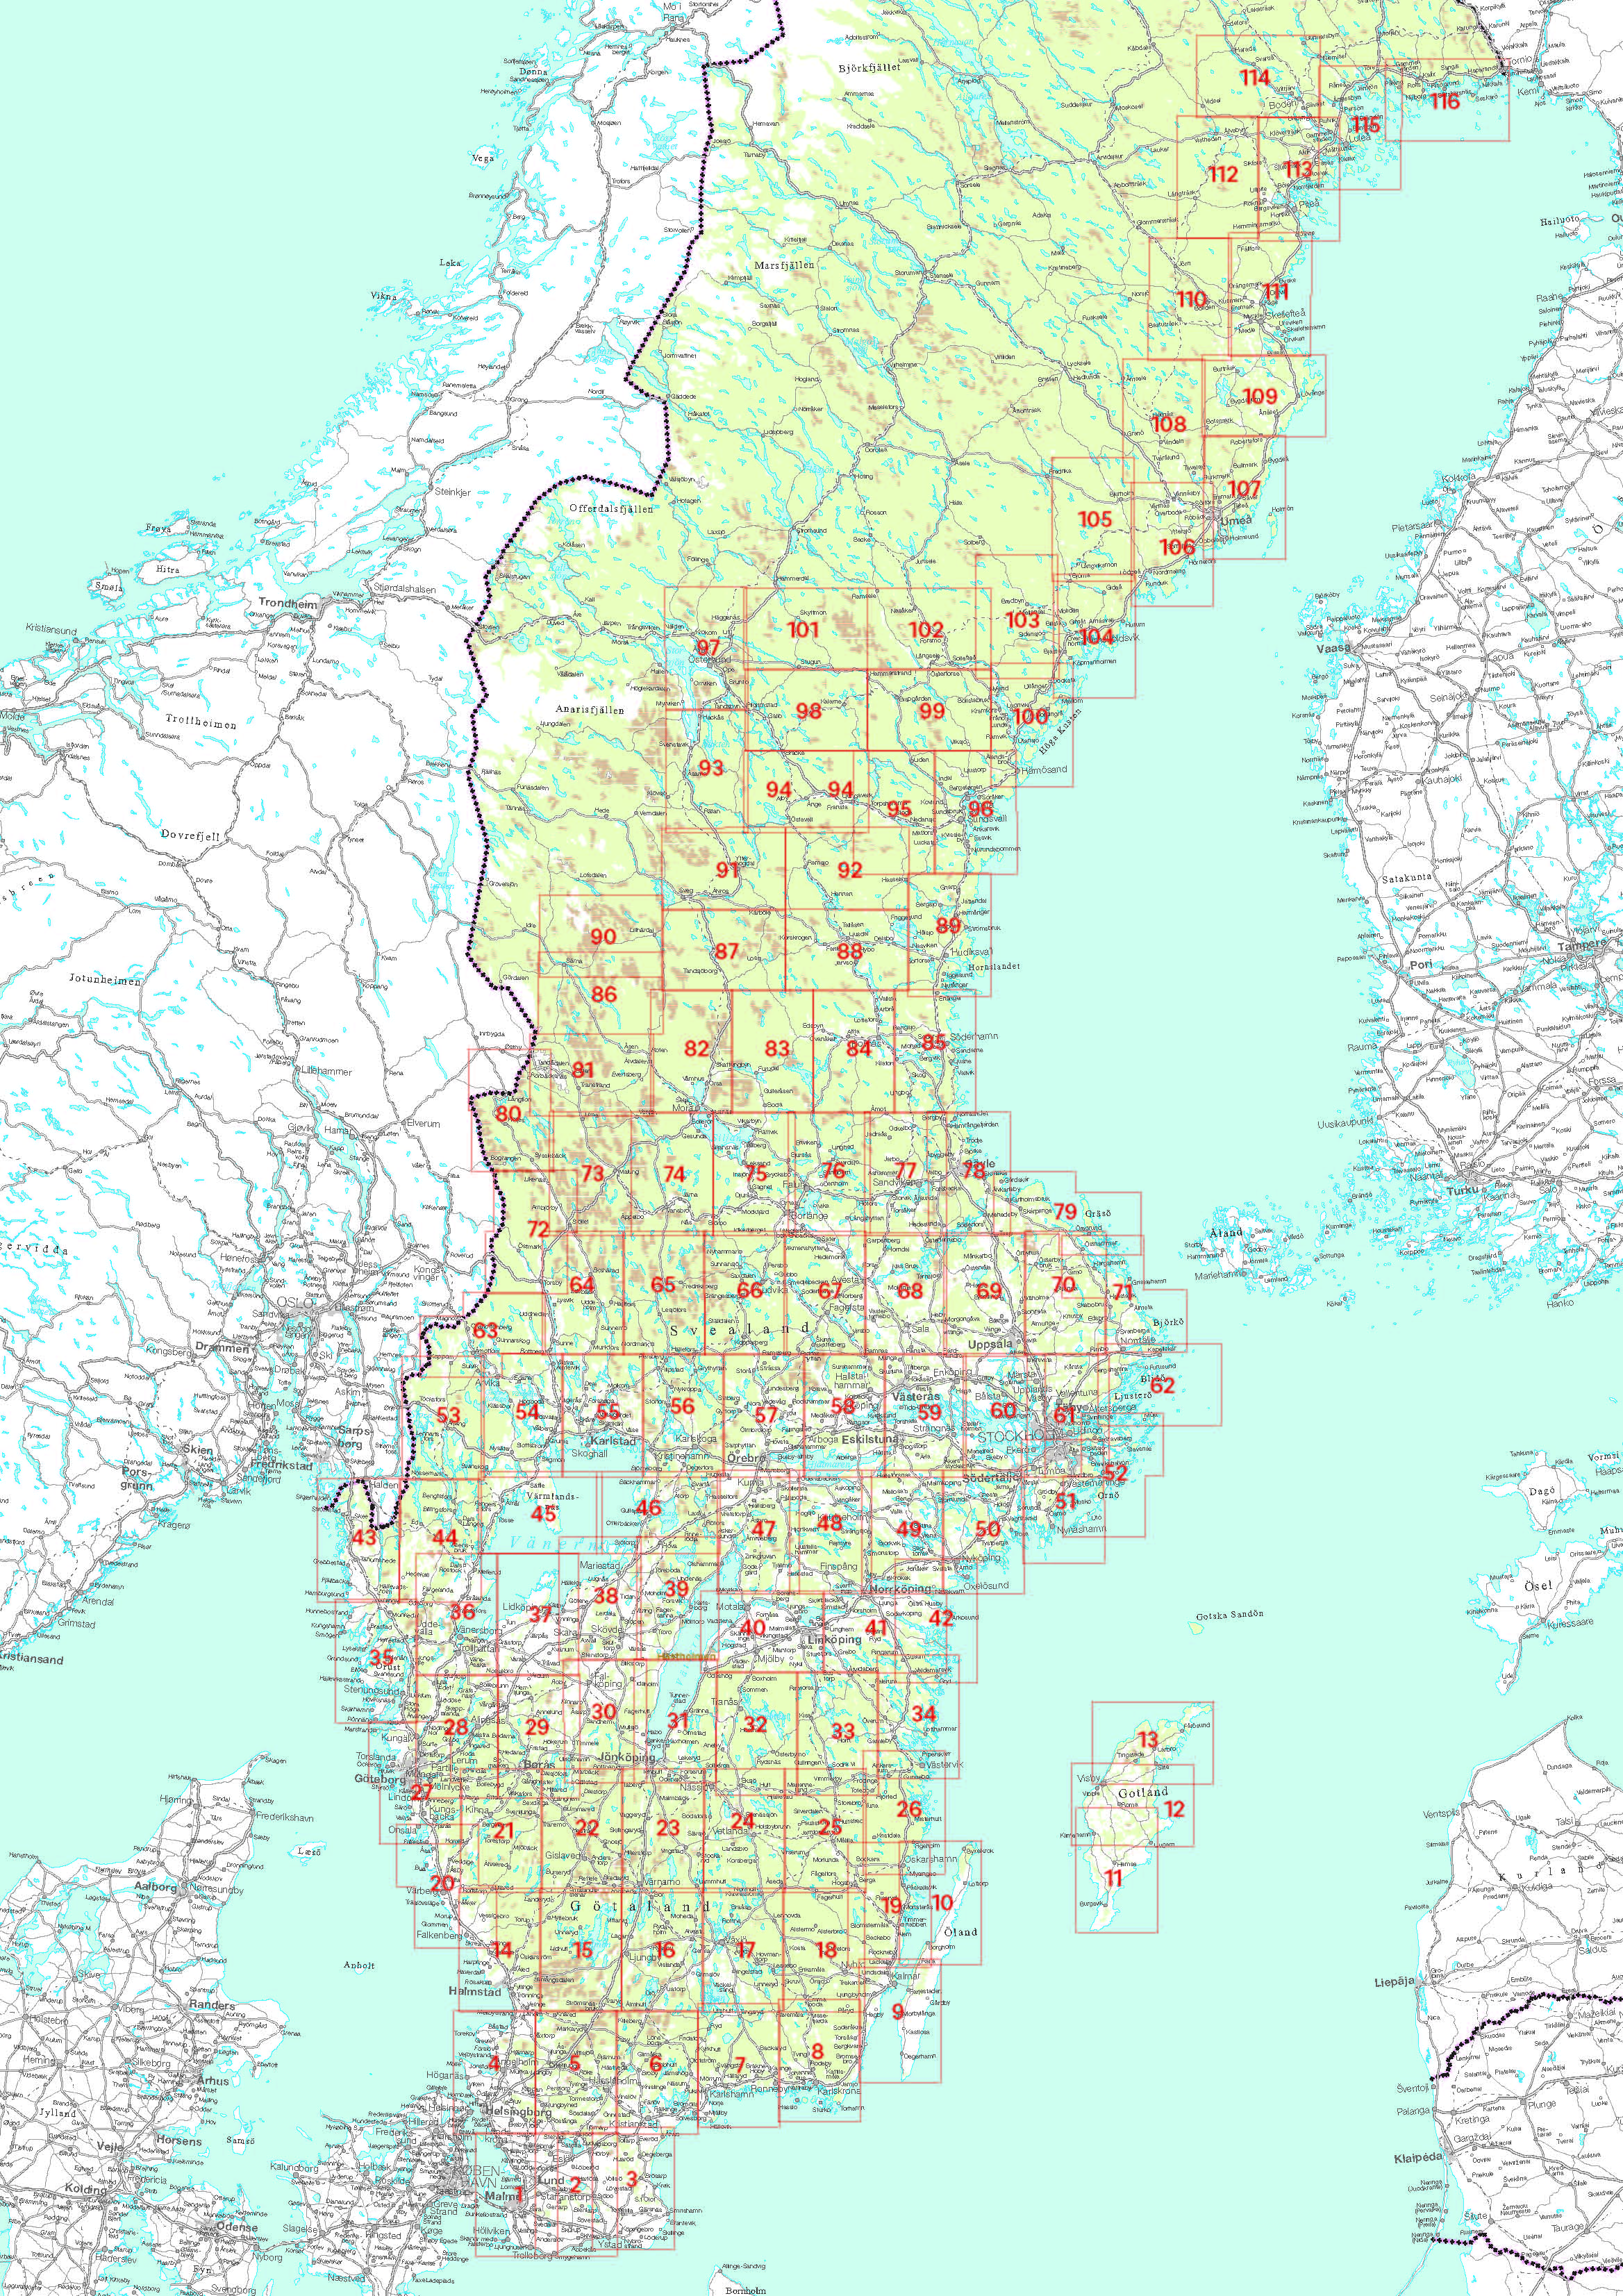 Karteneinteilung / Blattschnitt / Kartenübersicht für die Norstedts Topo50 Schweden 1:50.000